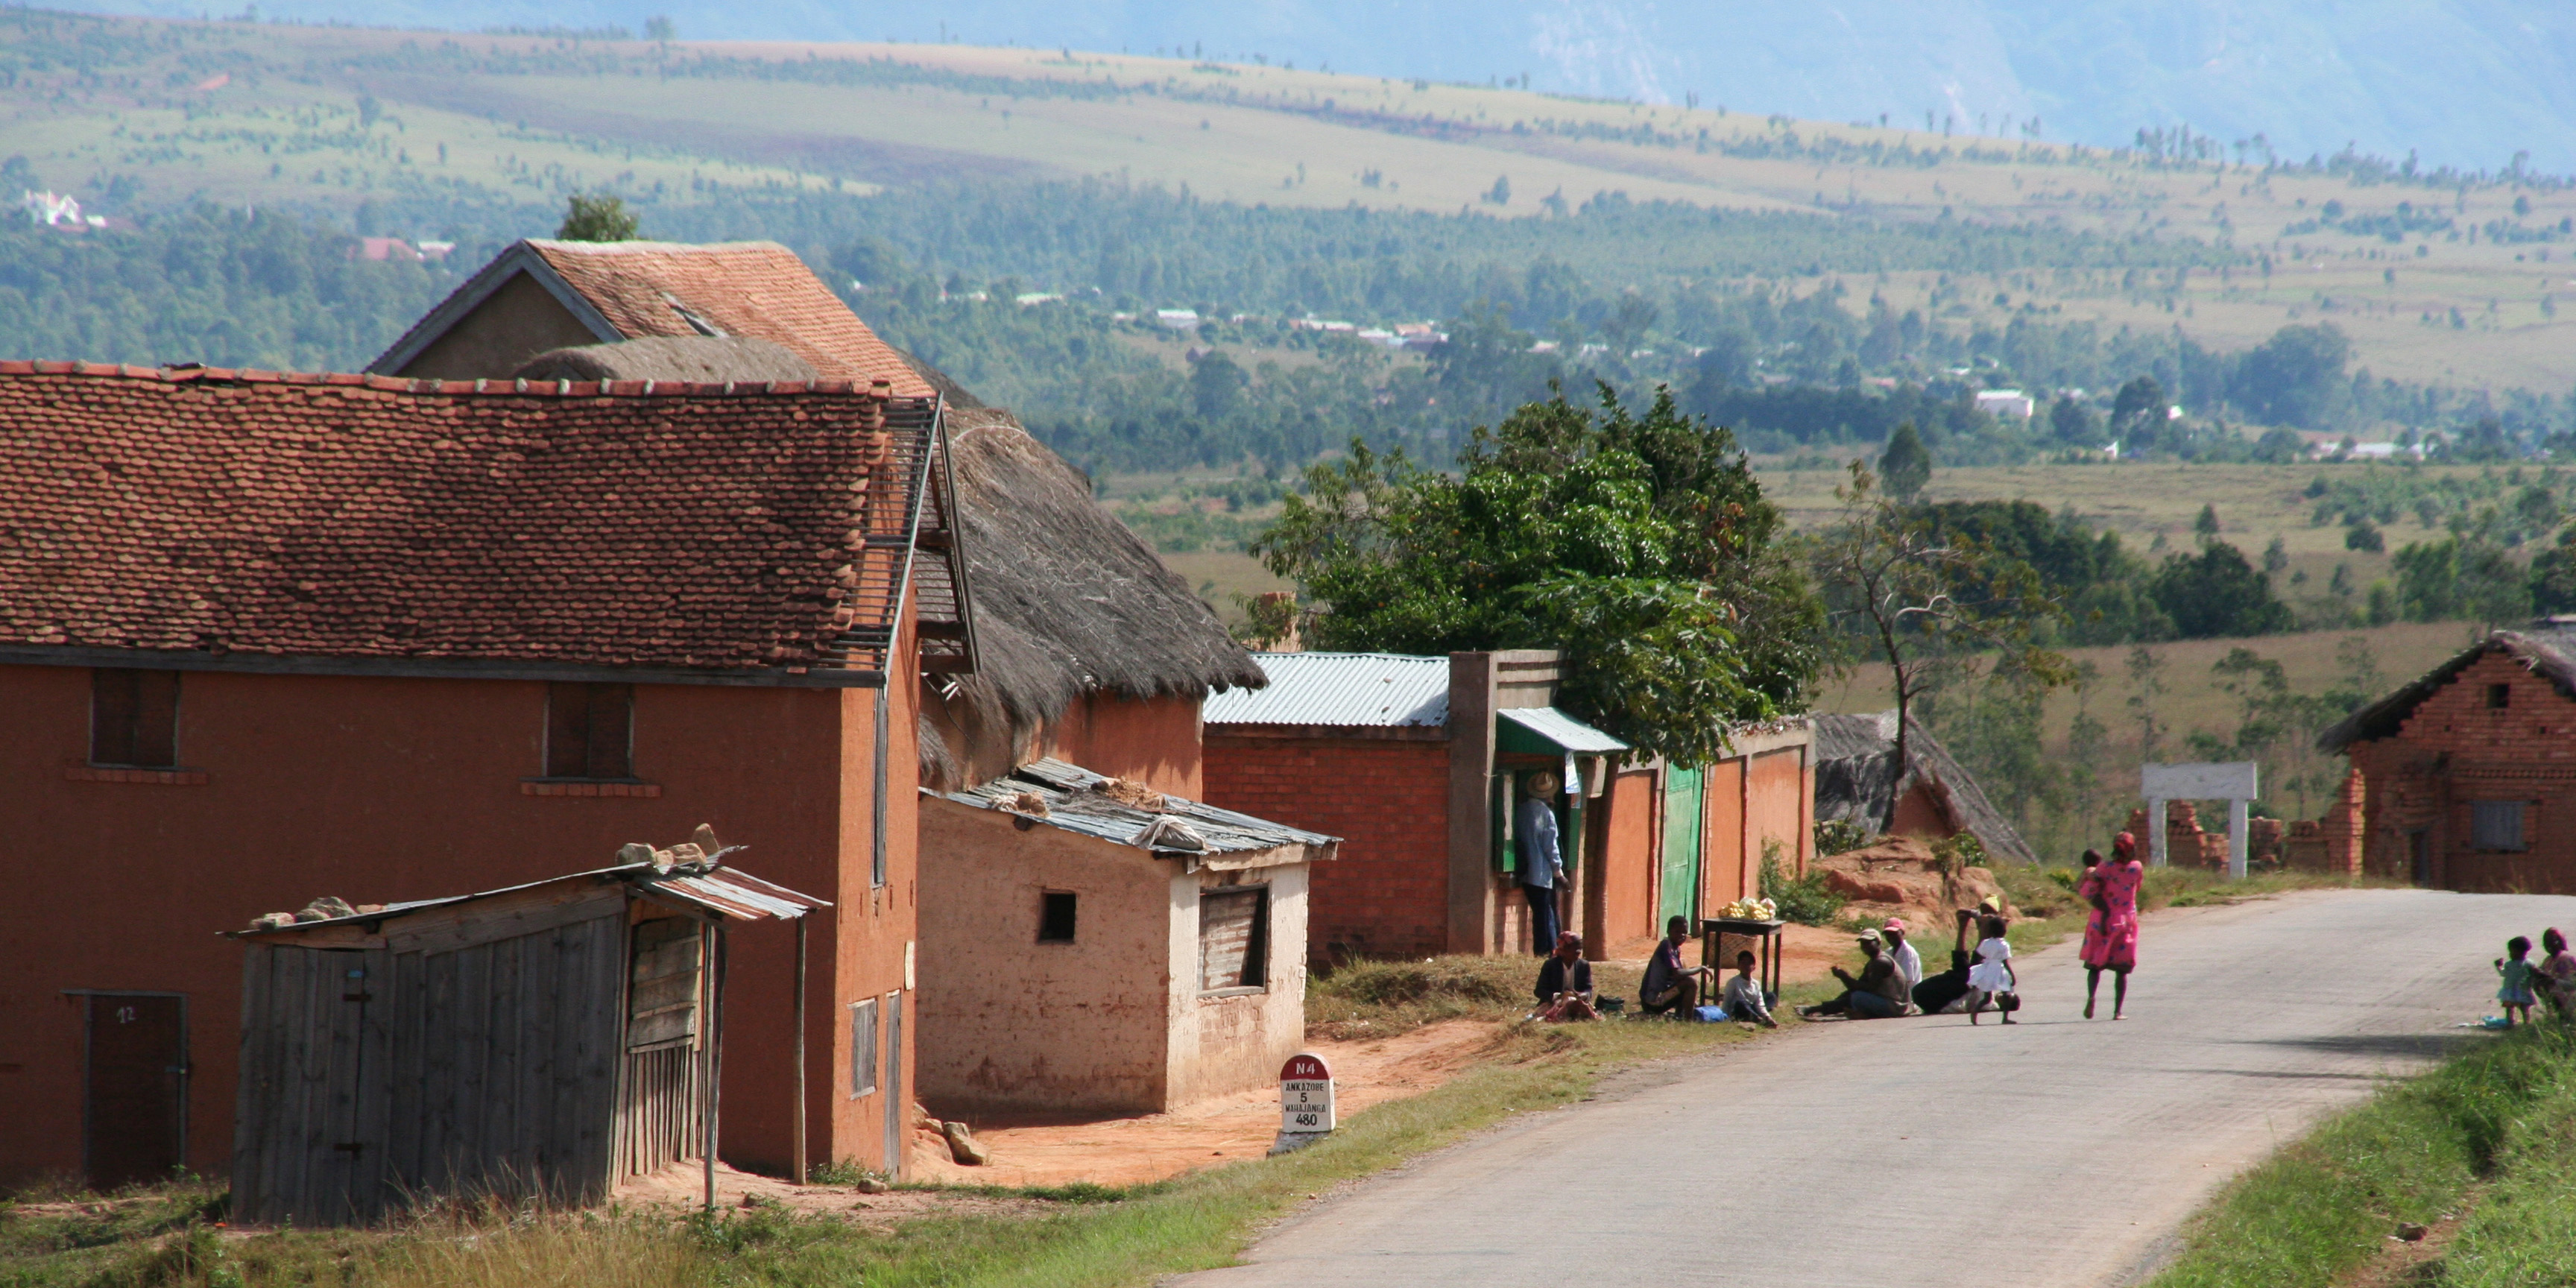 Via de stad Antsirabe vertrek je naar Miandrivazo, (de opstapplek voor de kantocht) een prachtige tocht door het hoogland langs groene 
            rijstvelden en terracottakleurige huizen die het landschap bepalen van het hoogland. De inwoners van dit gebied zijn de Merina, 
            de grootste etnische groep op Madagaskar